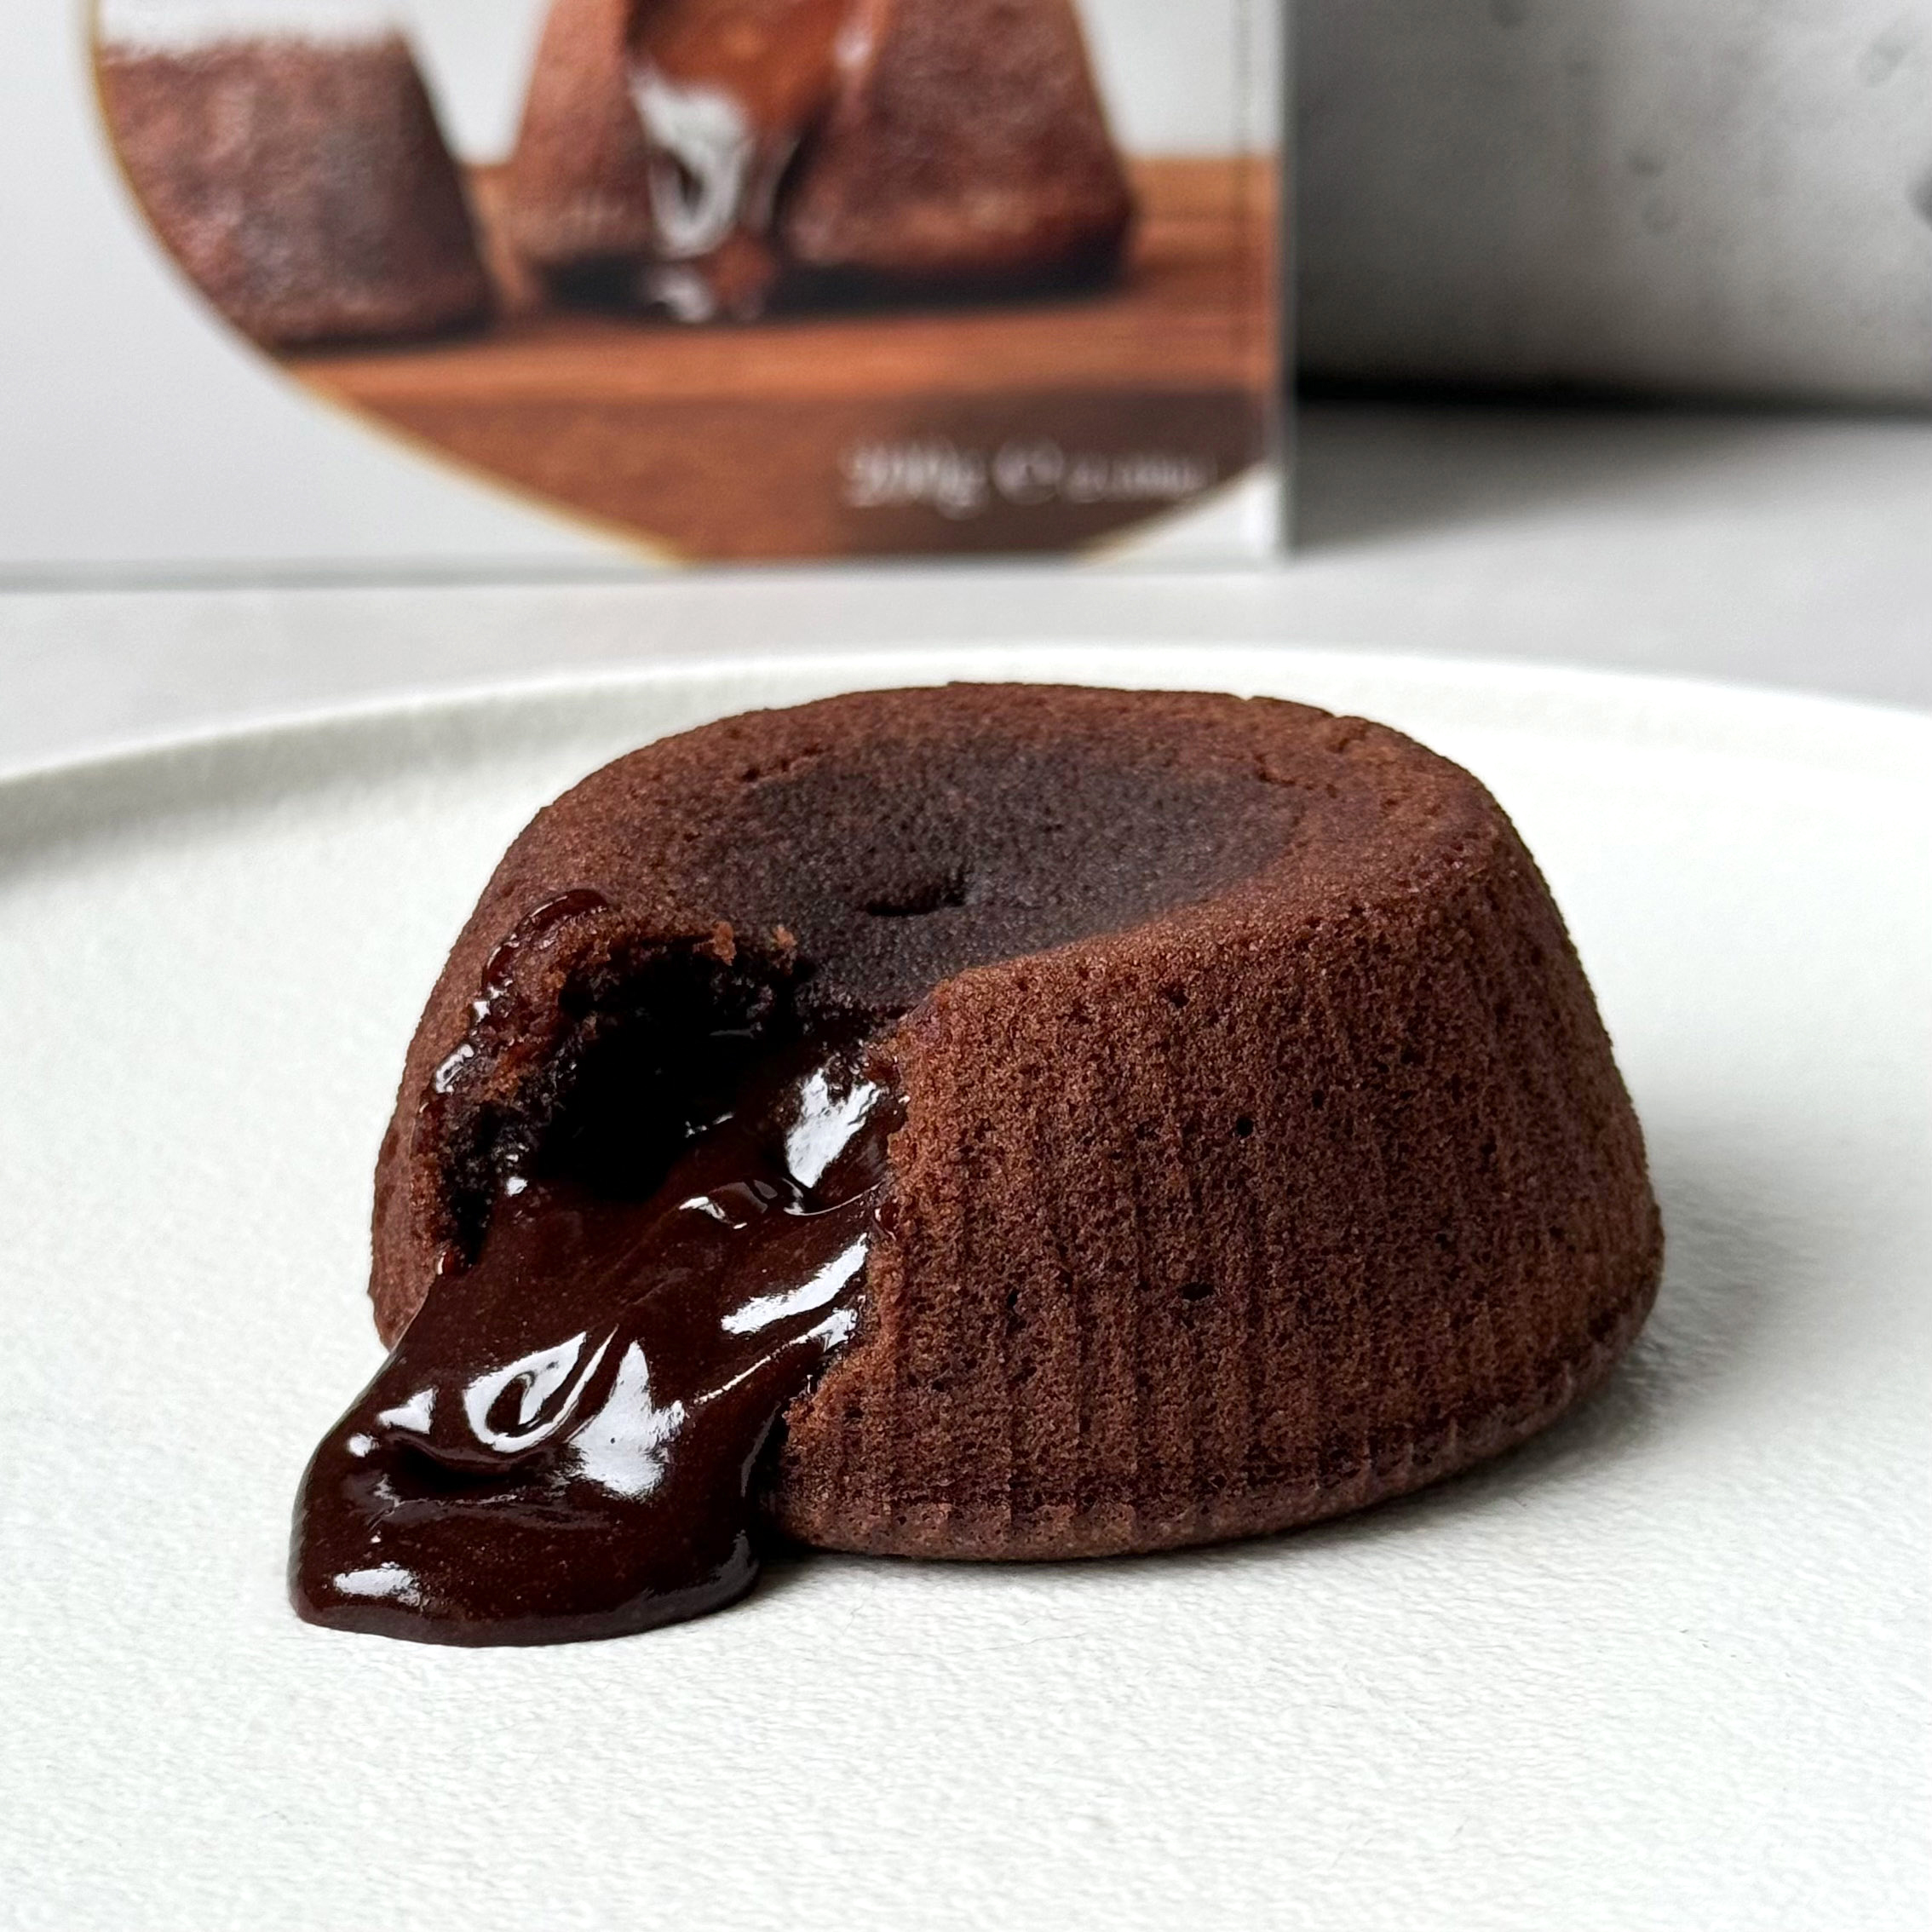 Шоколадный торт с суфле - рецепт приготовления с фото от апекс124.рф